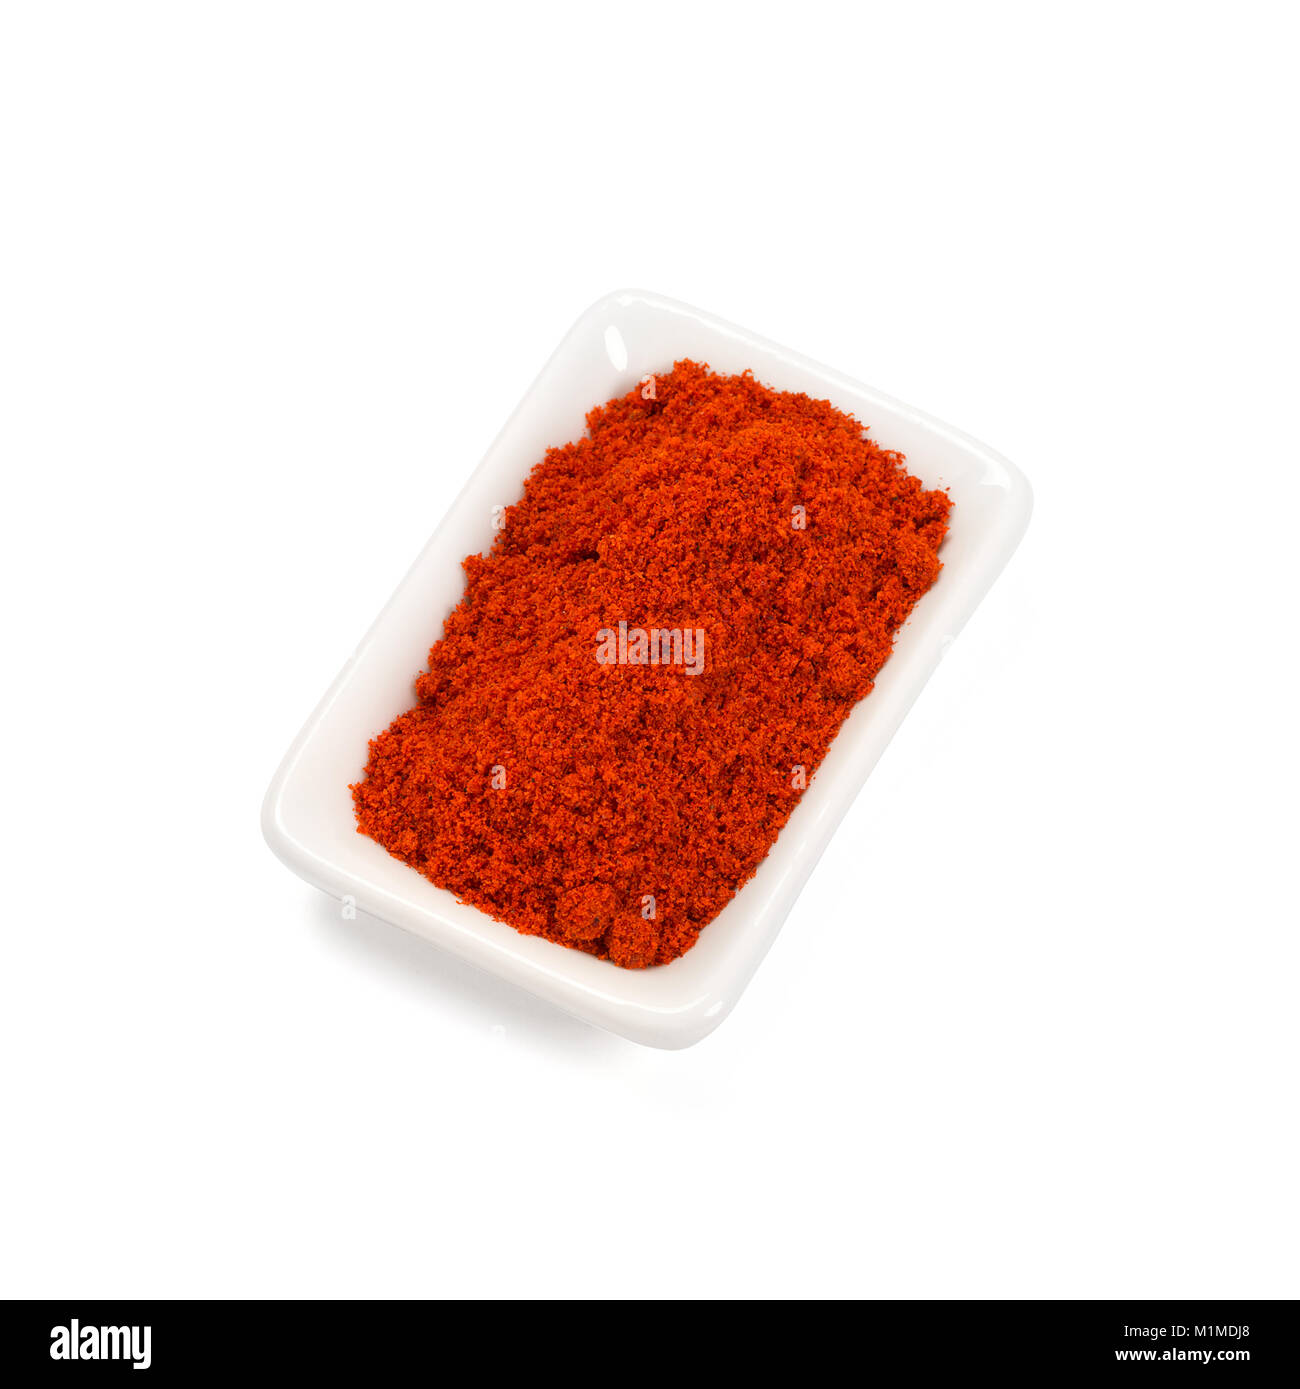 Poivre rouge pod sur tas de poudre de chili isolated on white Banque D'Images